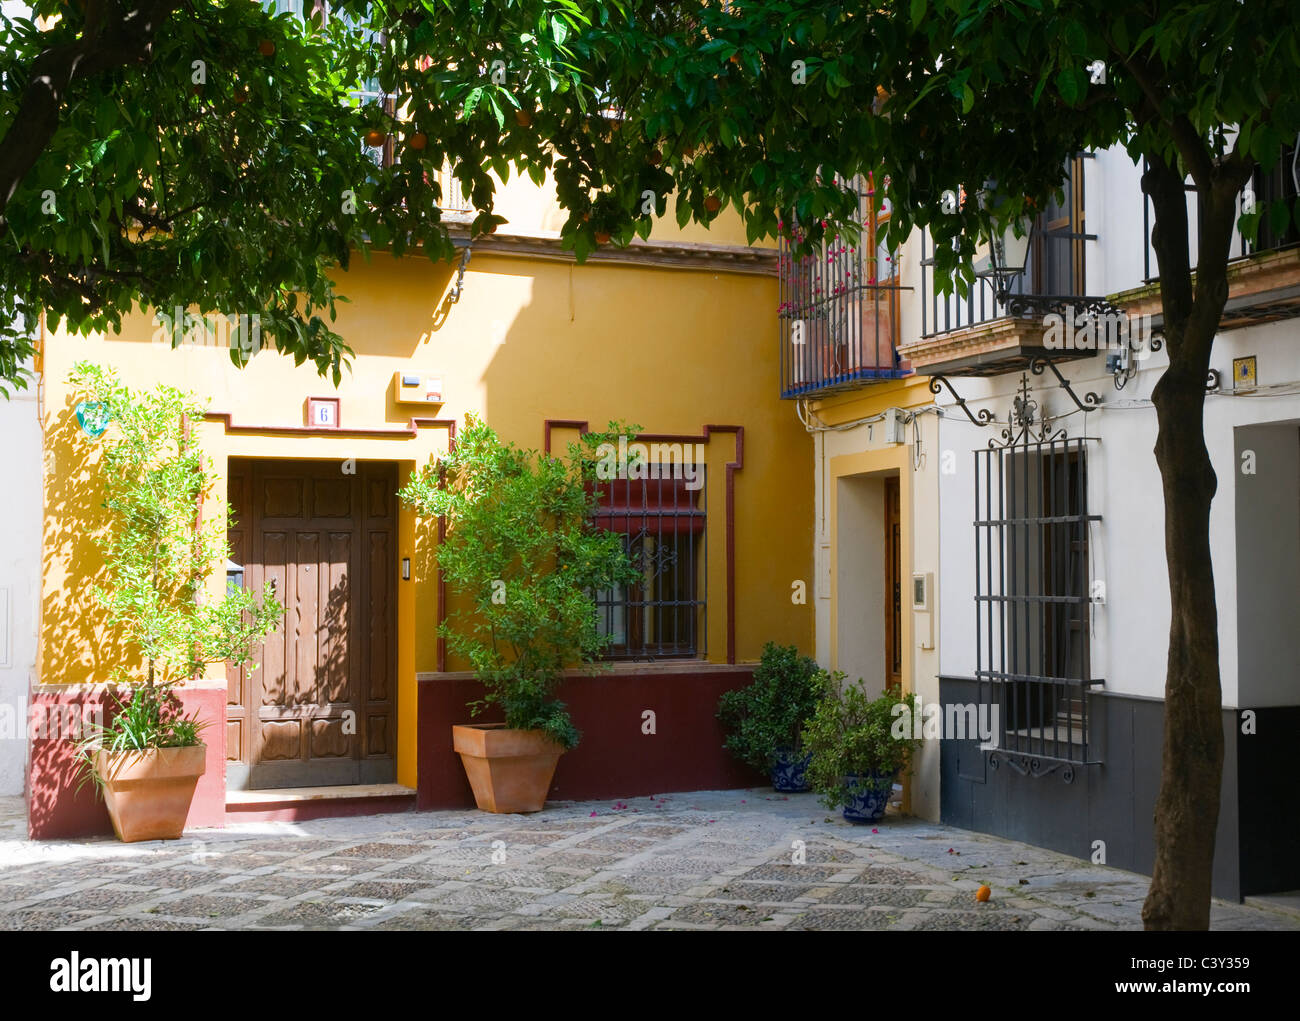 Una tipica scena di Siviglia, Spagna. Un quadrato ombreggiato da alberi di arancio. Foto Stock